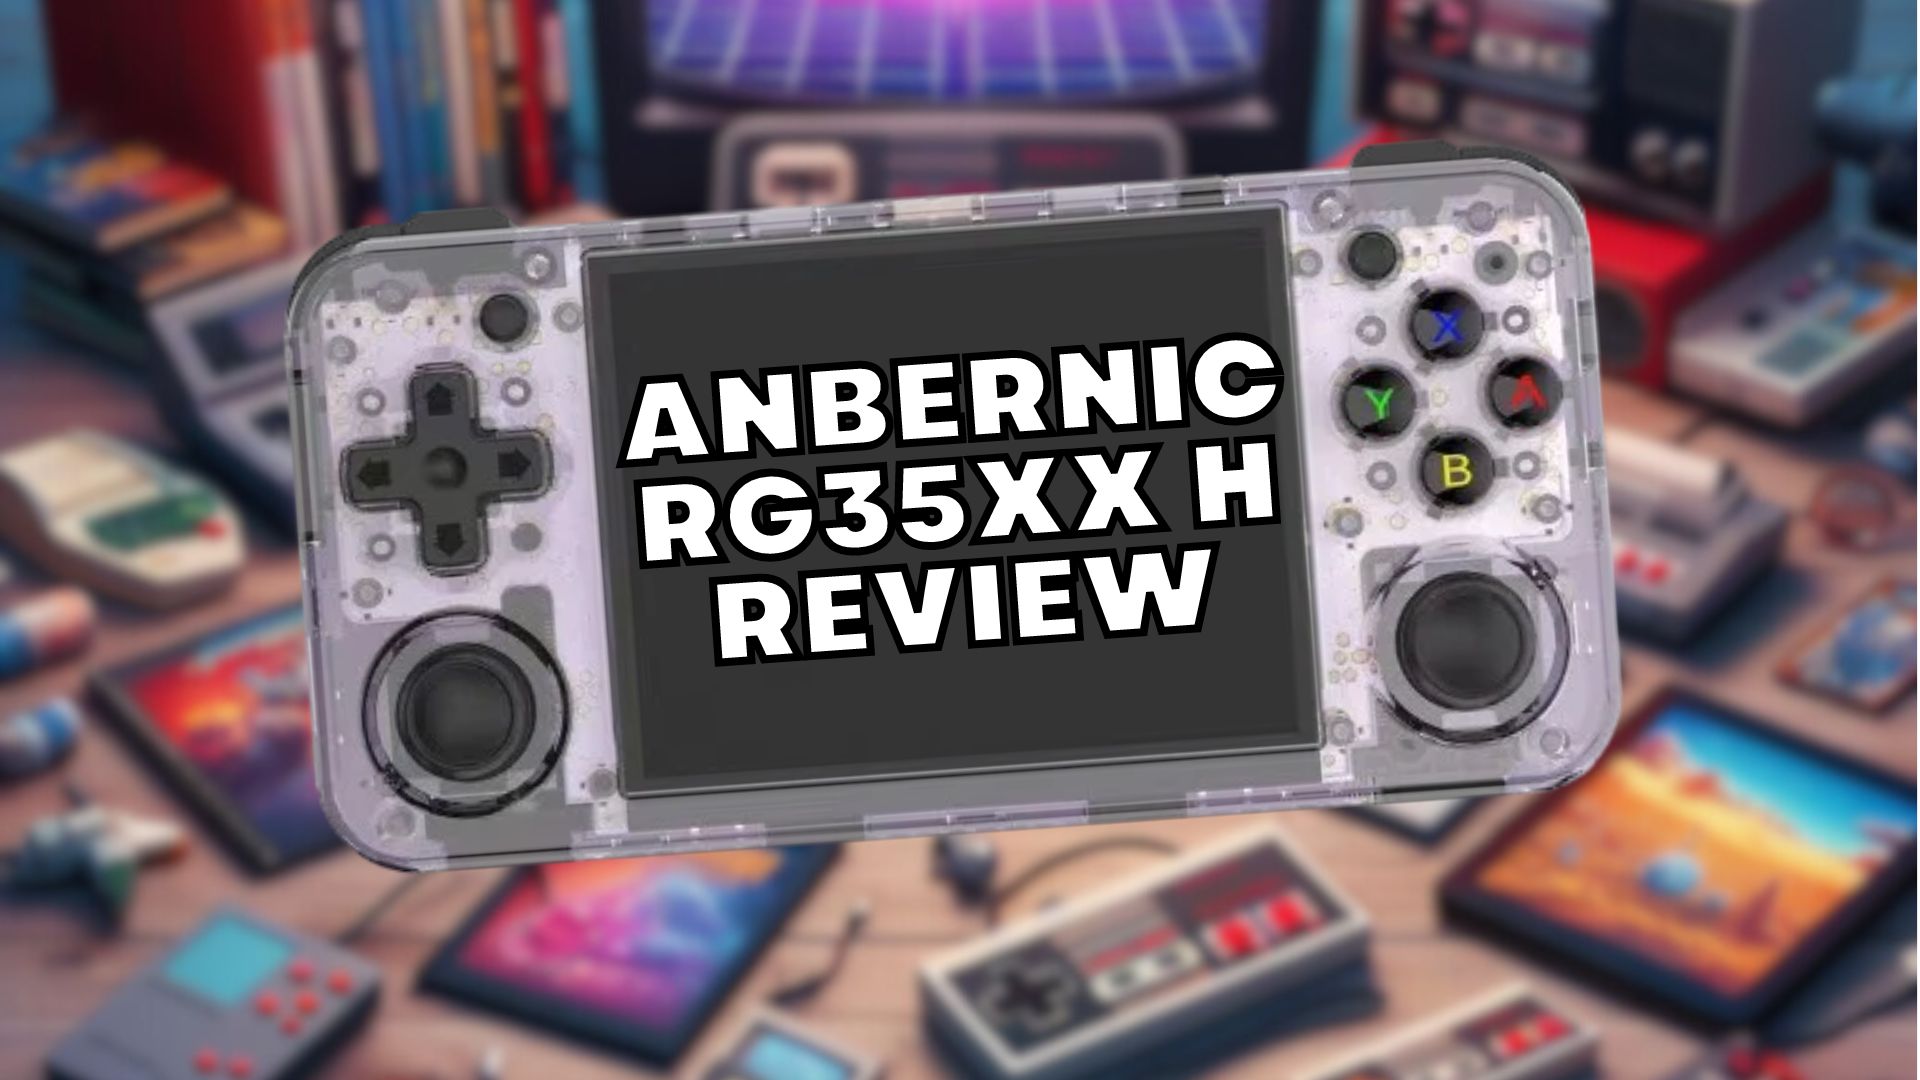 Anbernic RG35XX H Recensione - Ottima console portatile economica per giochi retrò